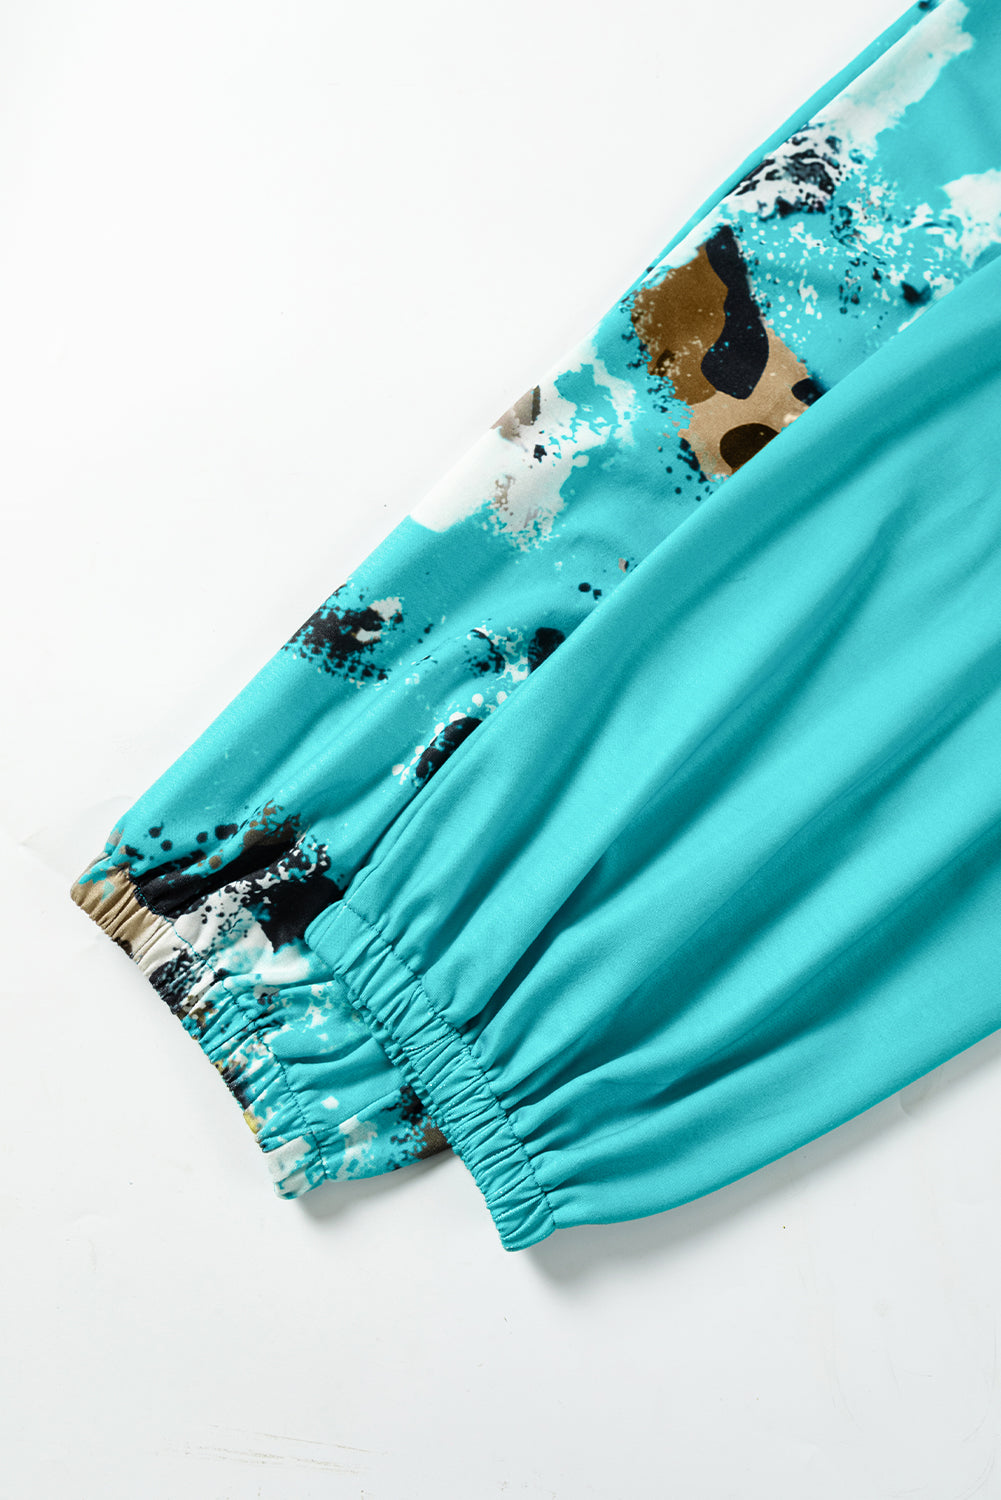 Svetlo modre jogger hlače s kontrastnim leopardjim tie-dye vzorcem